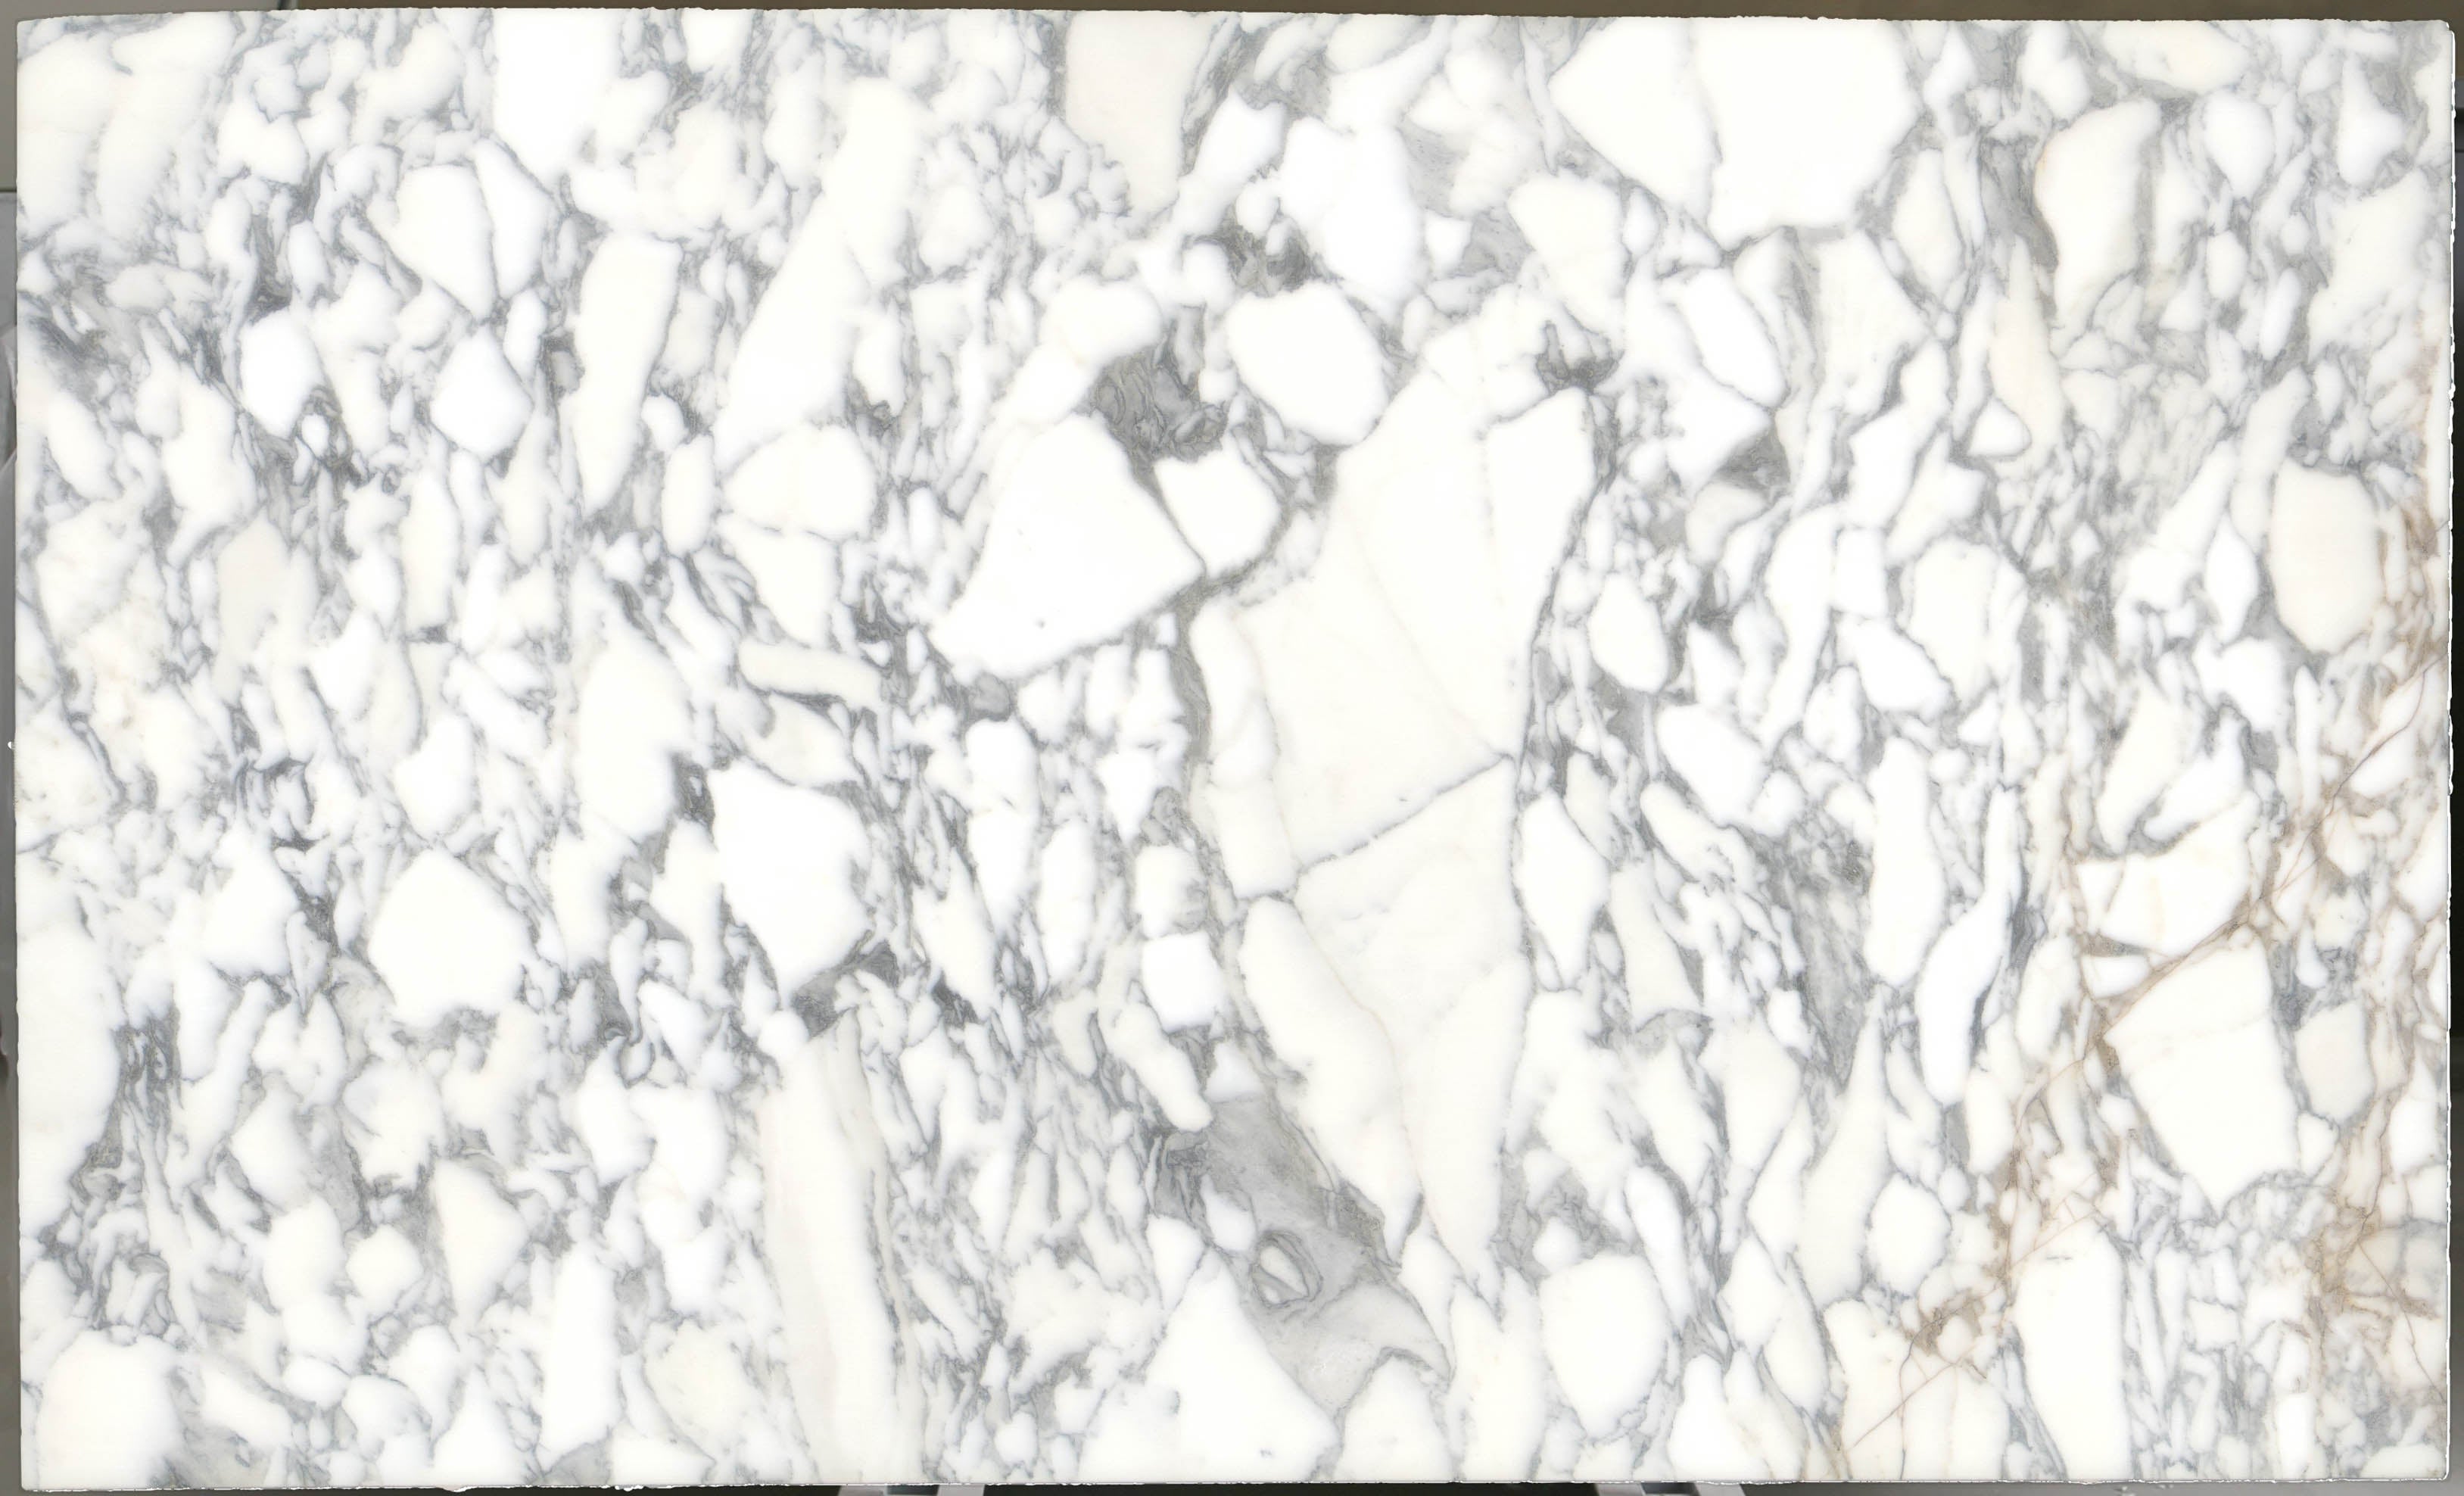  Arabescato Corchia Marble Slab 3/4 - 4026#21 -  VS 74x123 